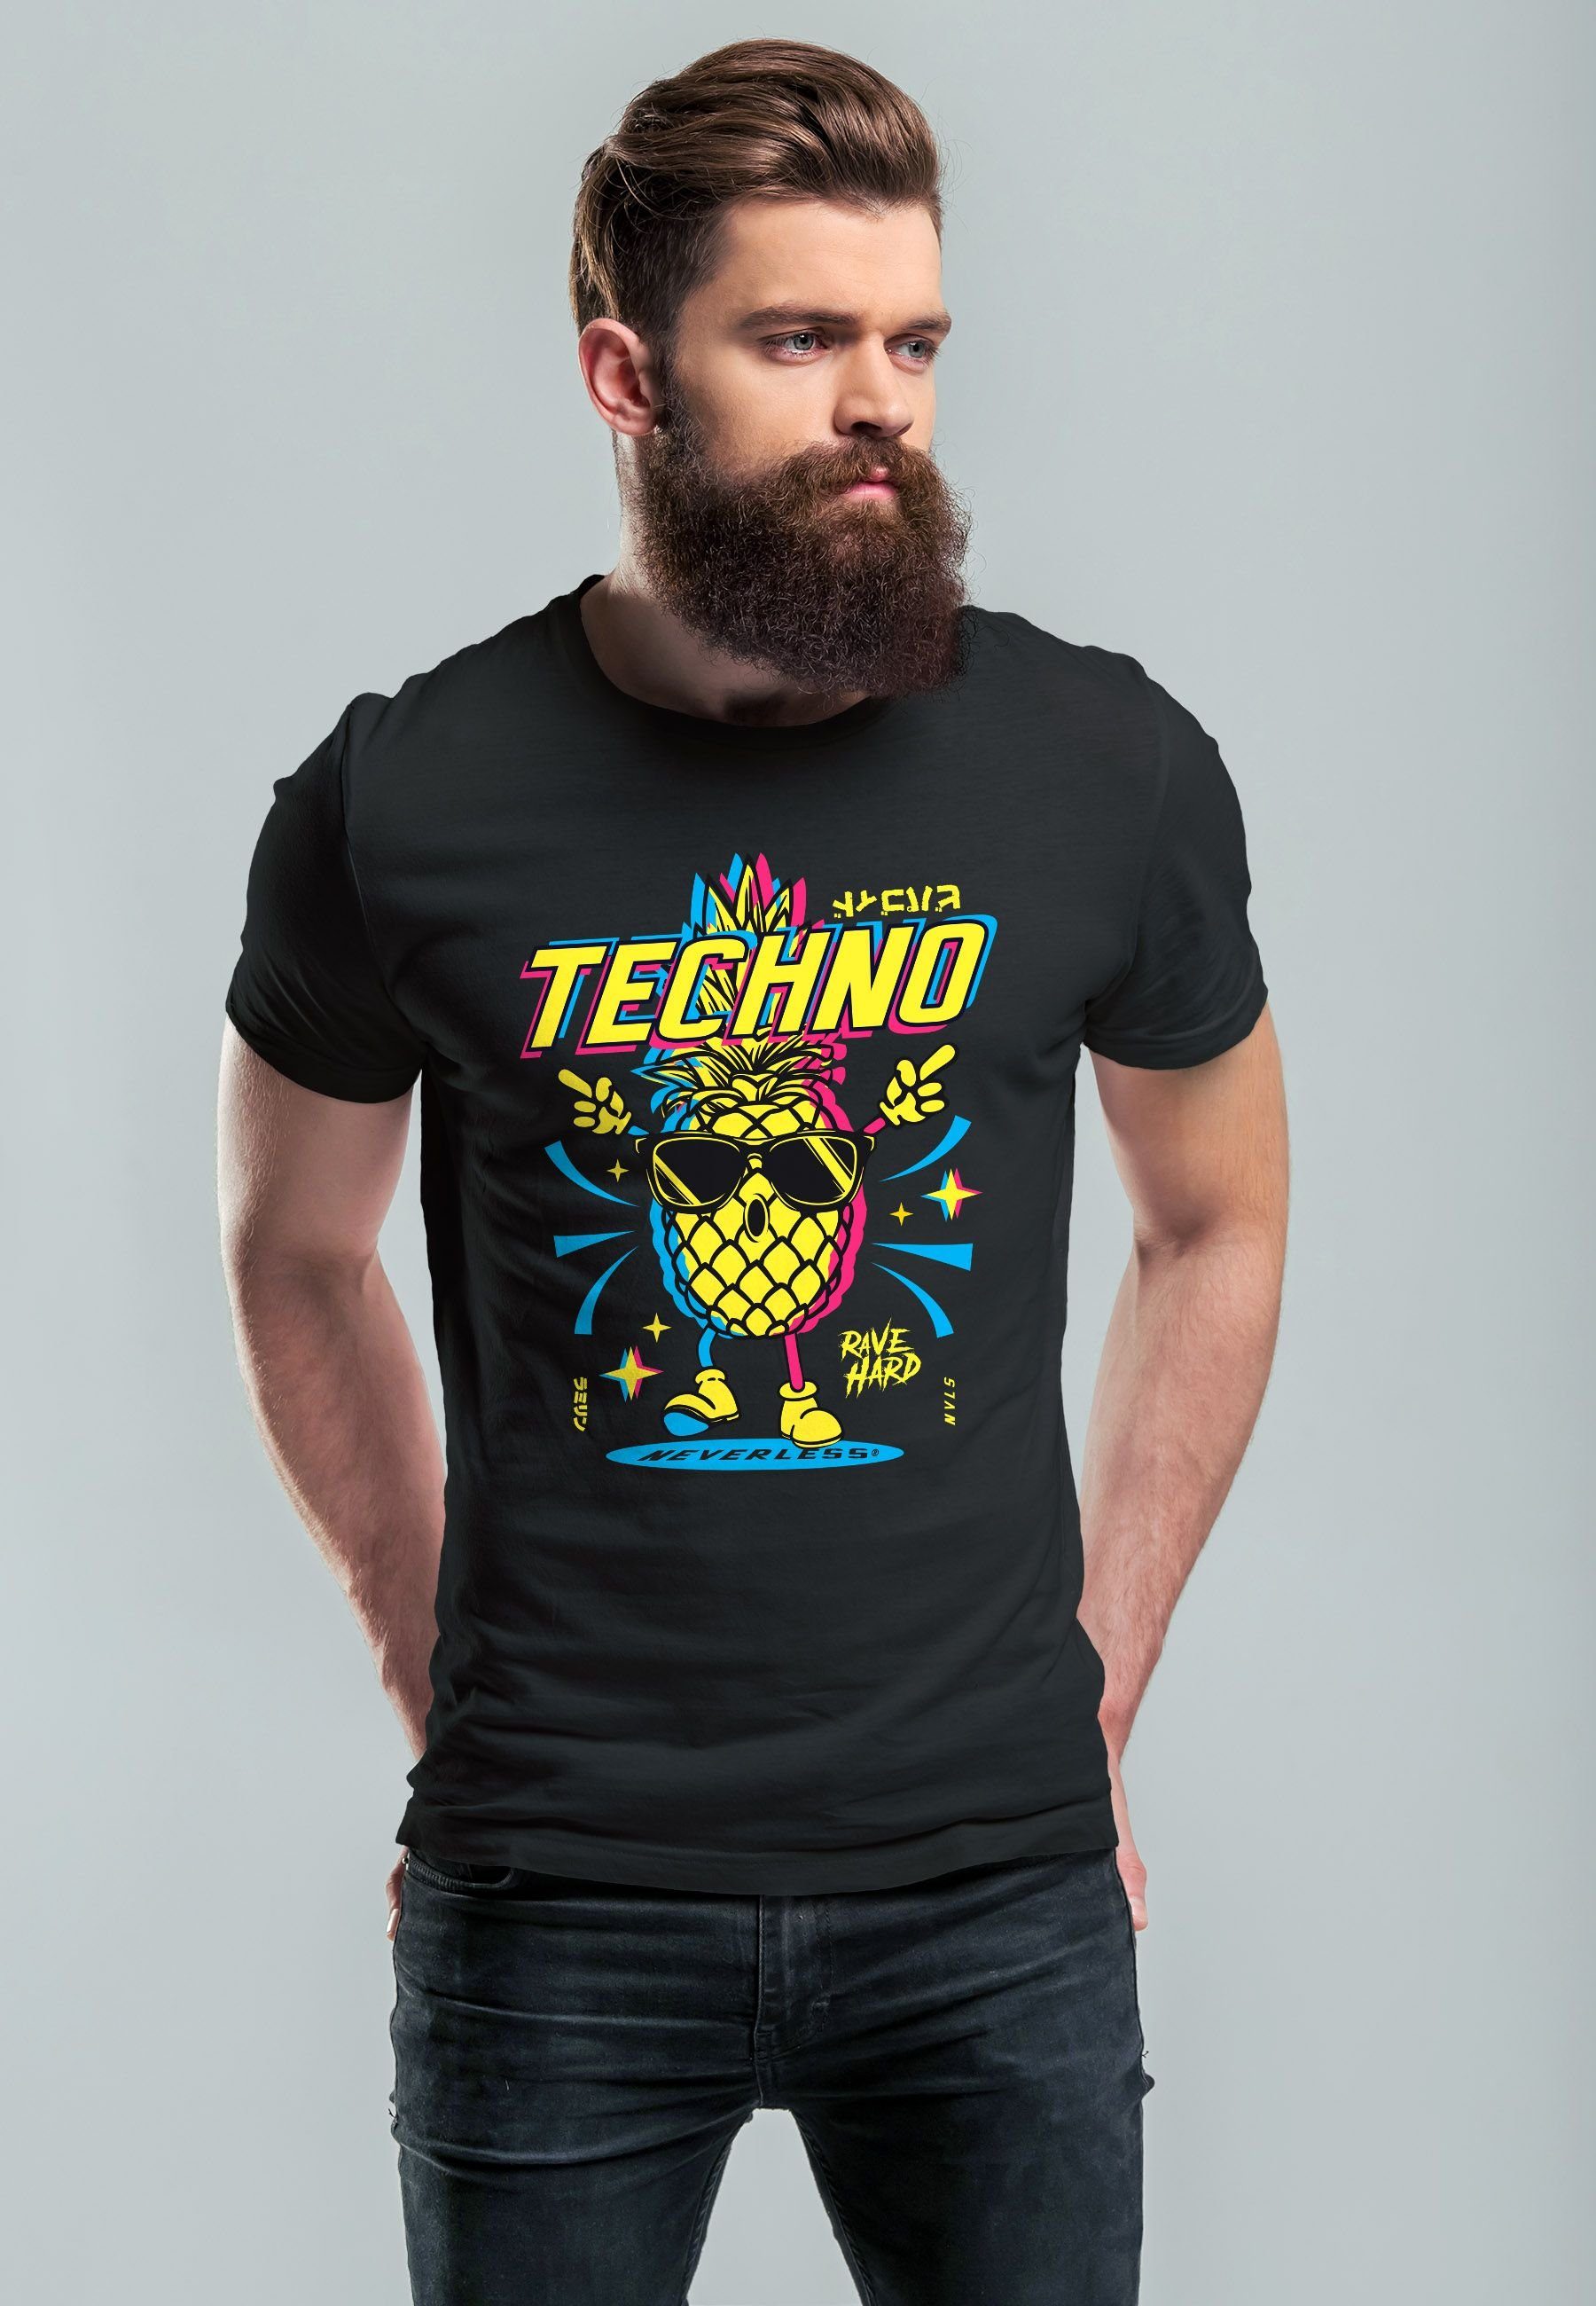 mit T-Shirt Printshirt Tanzen Herren Neverless Party Print schwarz Rave Techno Ananas Shirt Print-Shirt Lustig